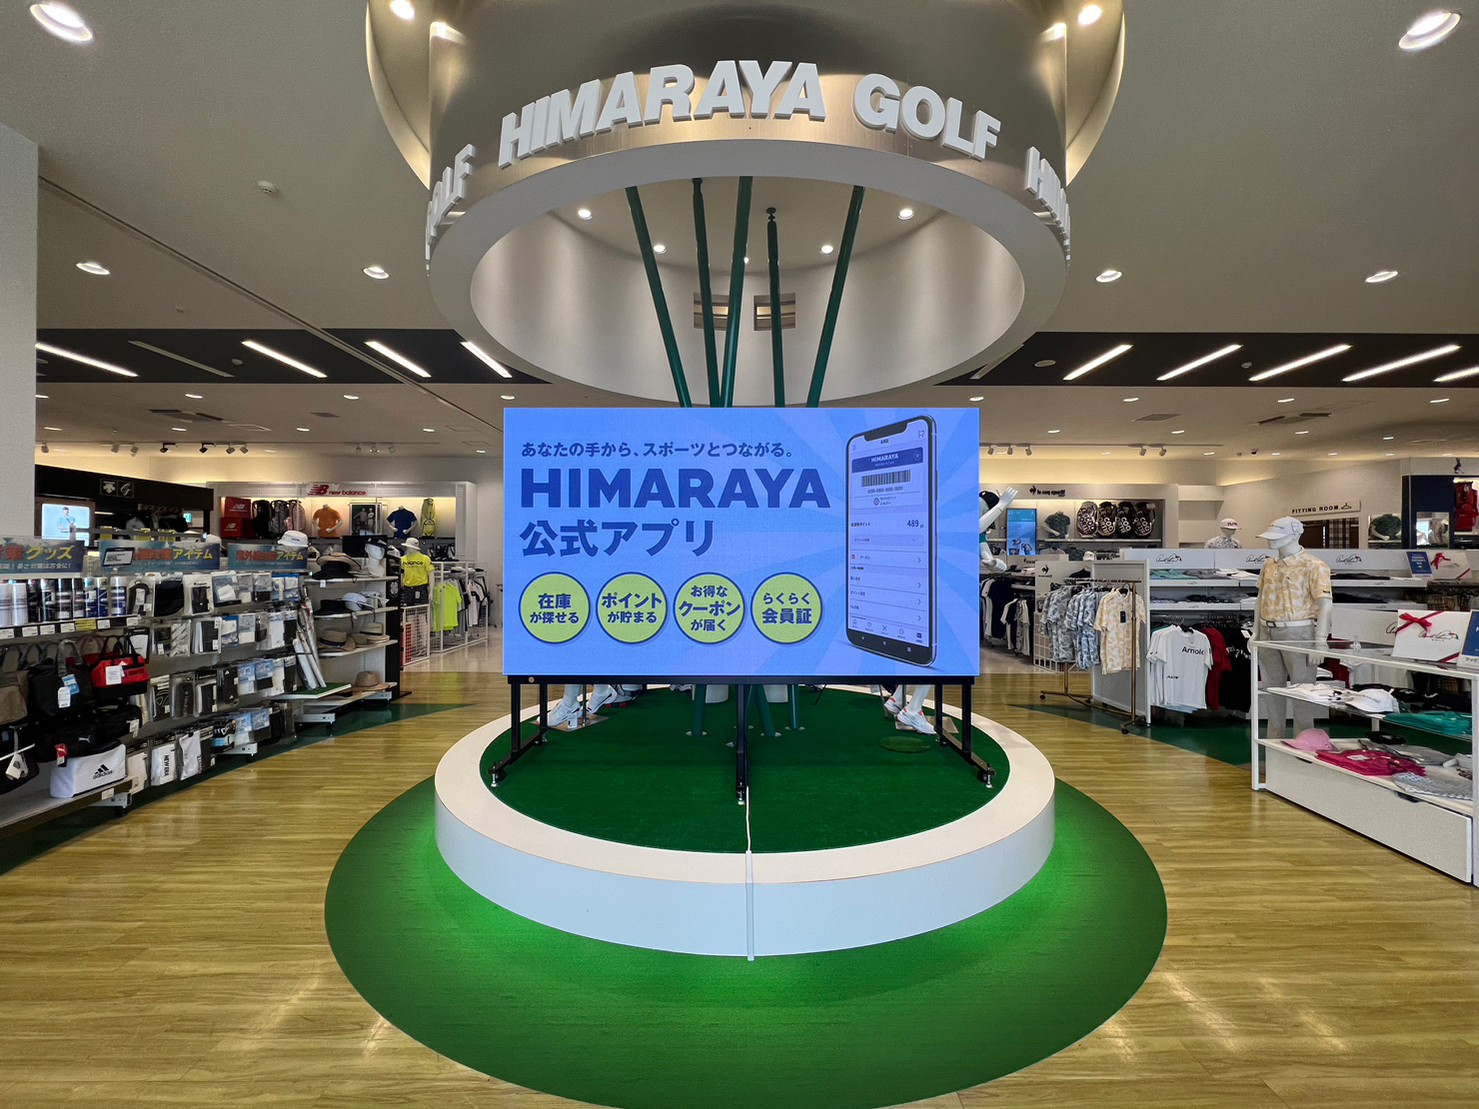 ヒマラヤゴルフ本店三幸電子LEDビジョン